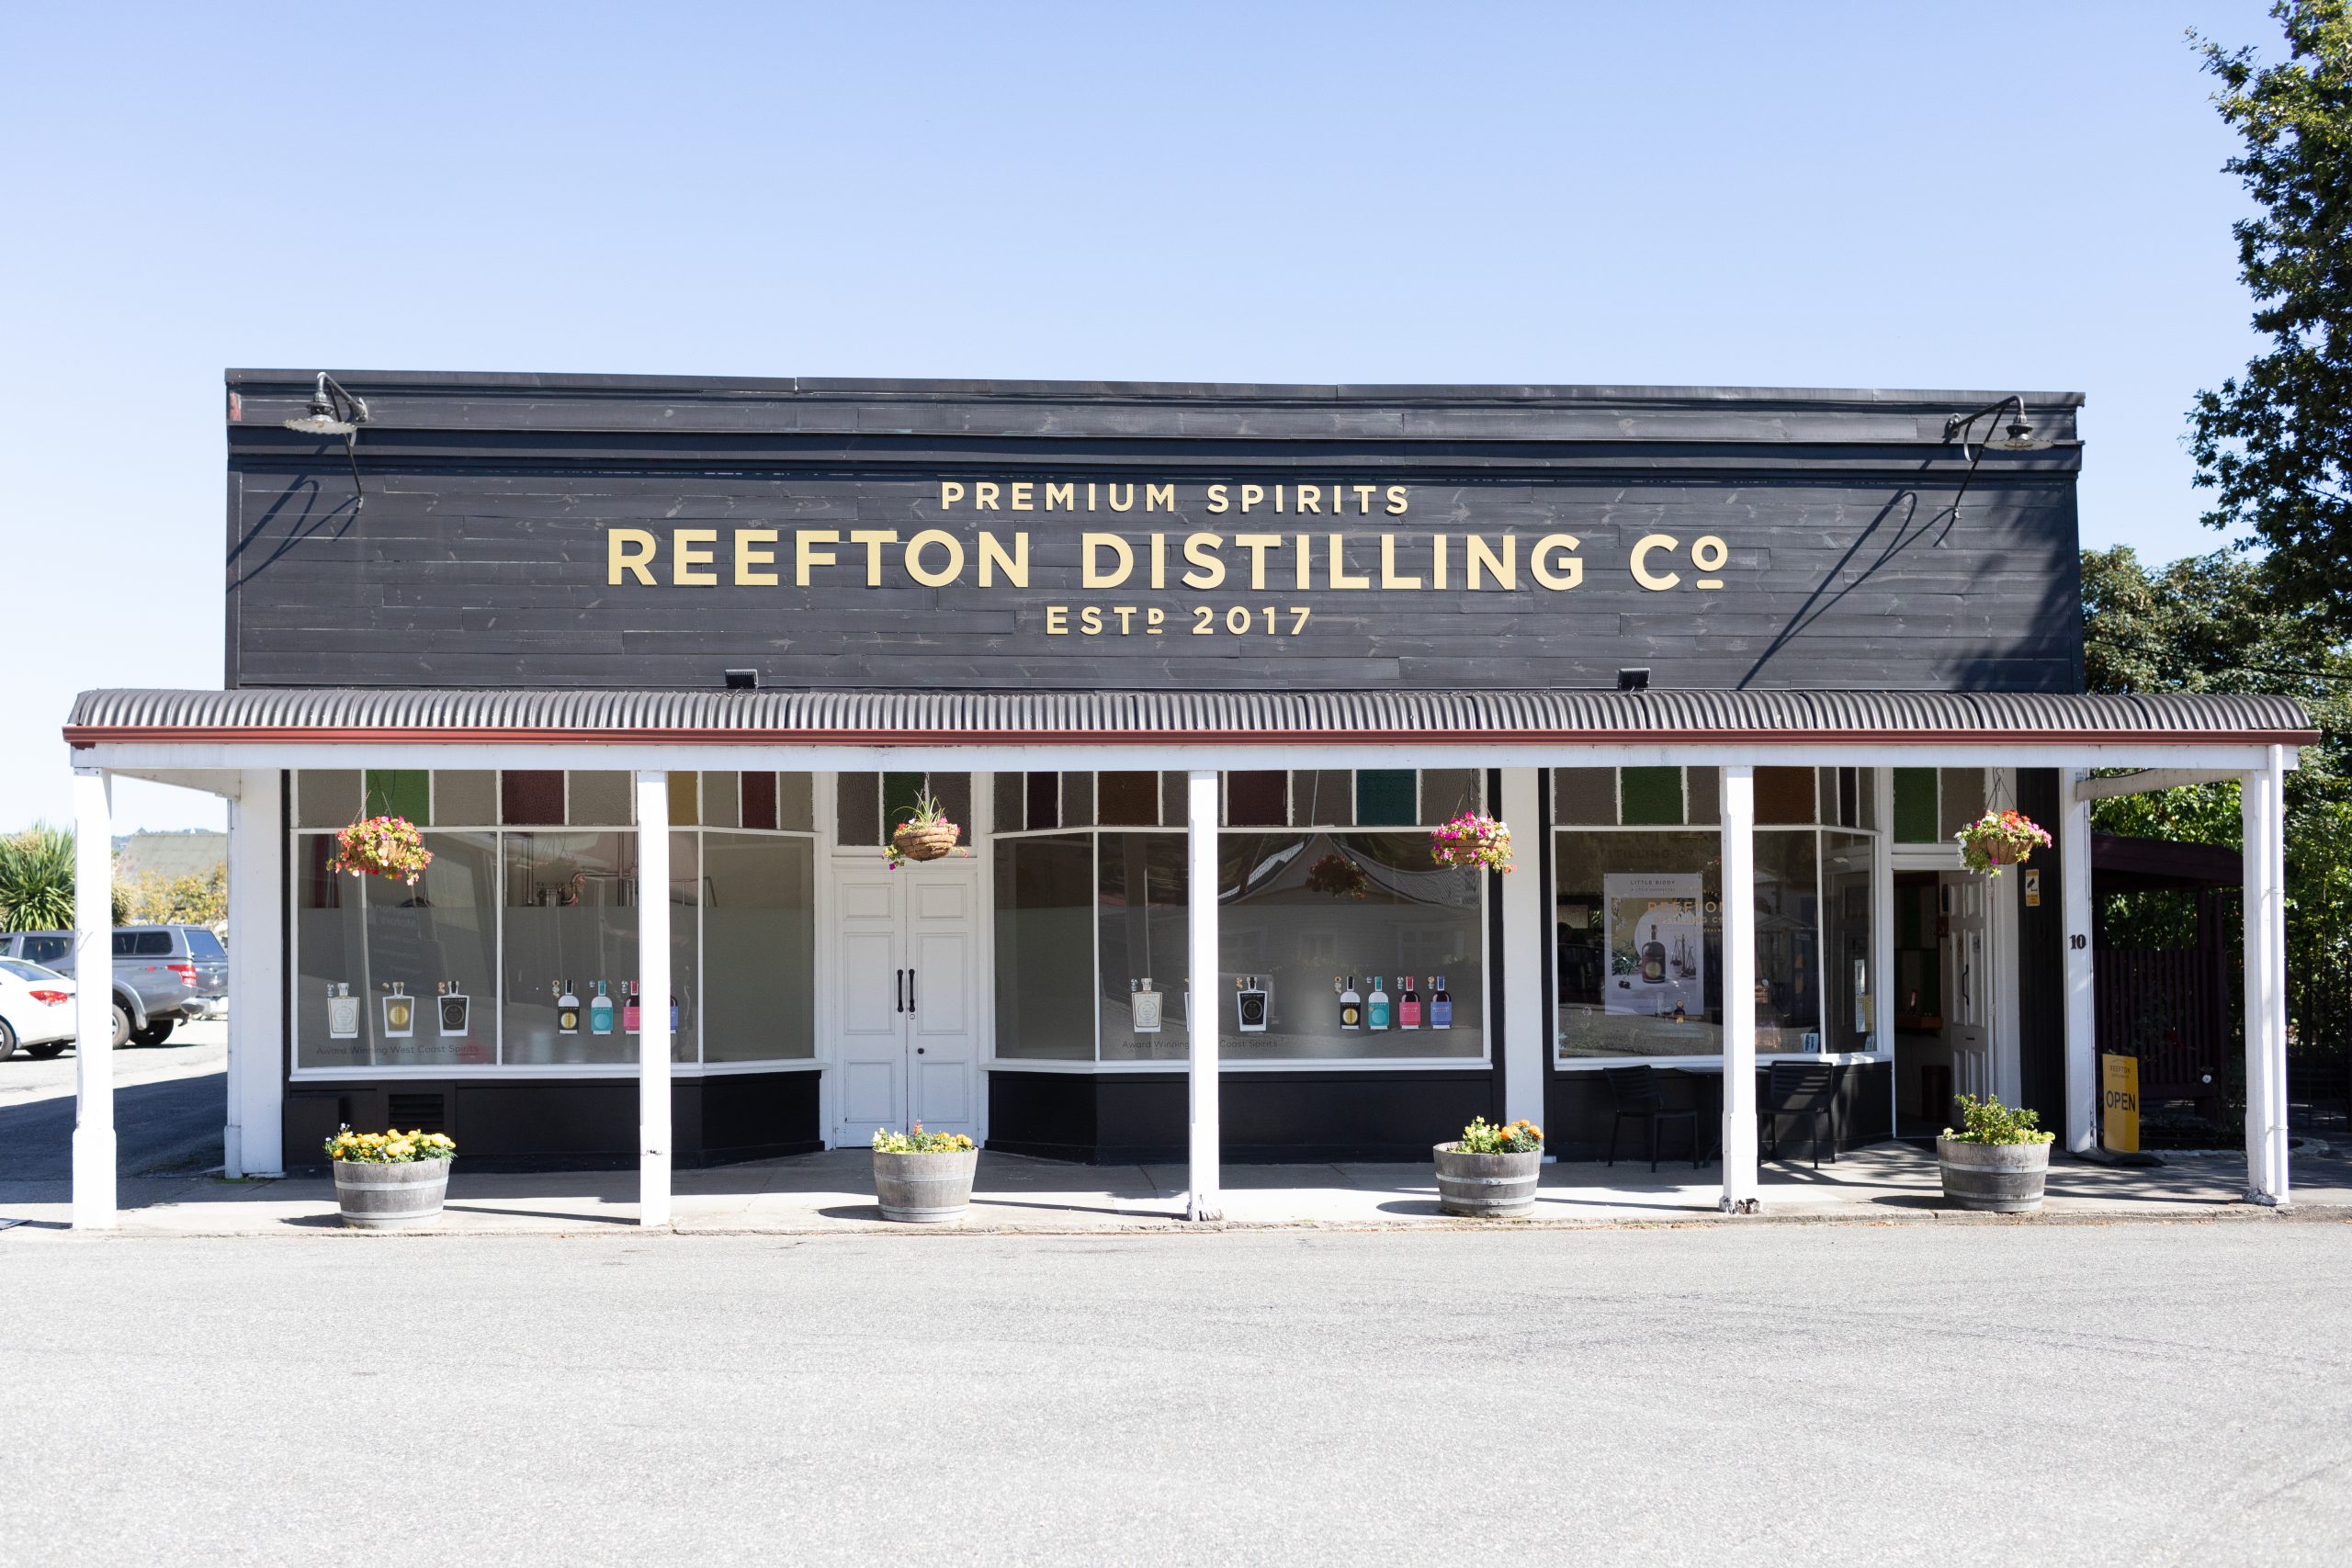 Reefton Distilling Co. Cellar Door